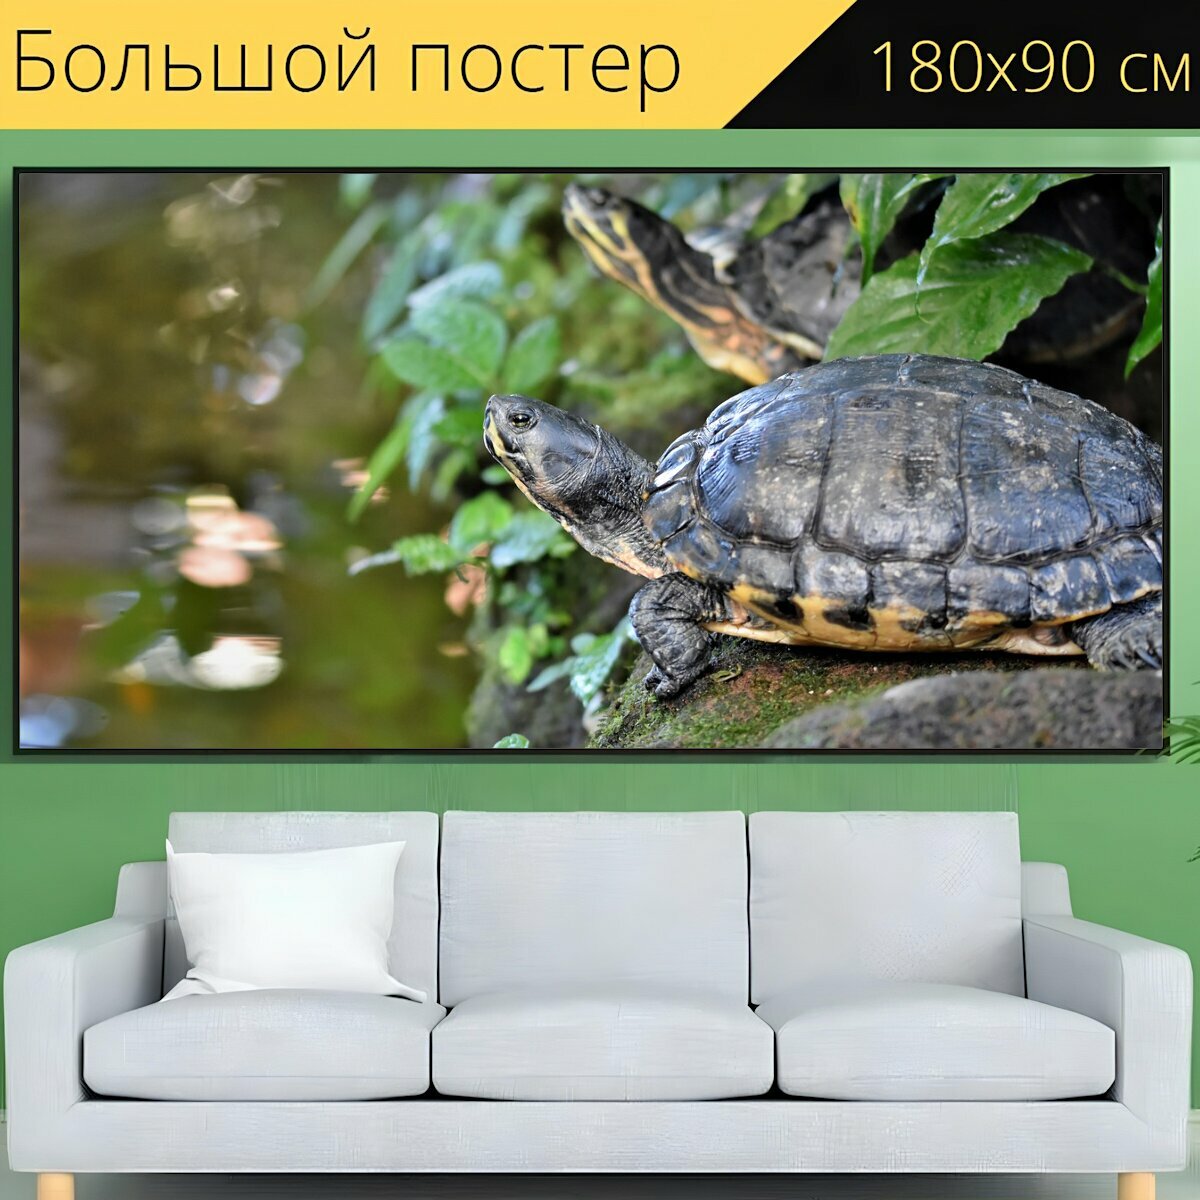 Большой постер "Черепаха, воды черепаха, рептилия" 180 x 90 см. для интерьера